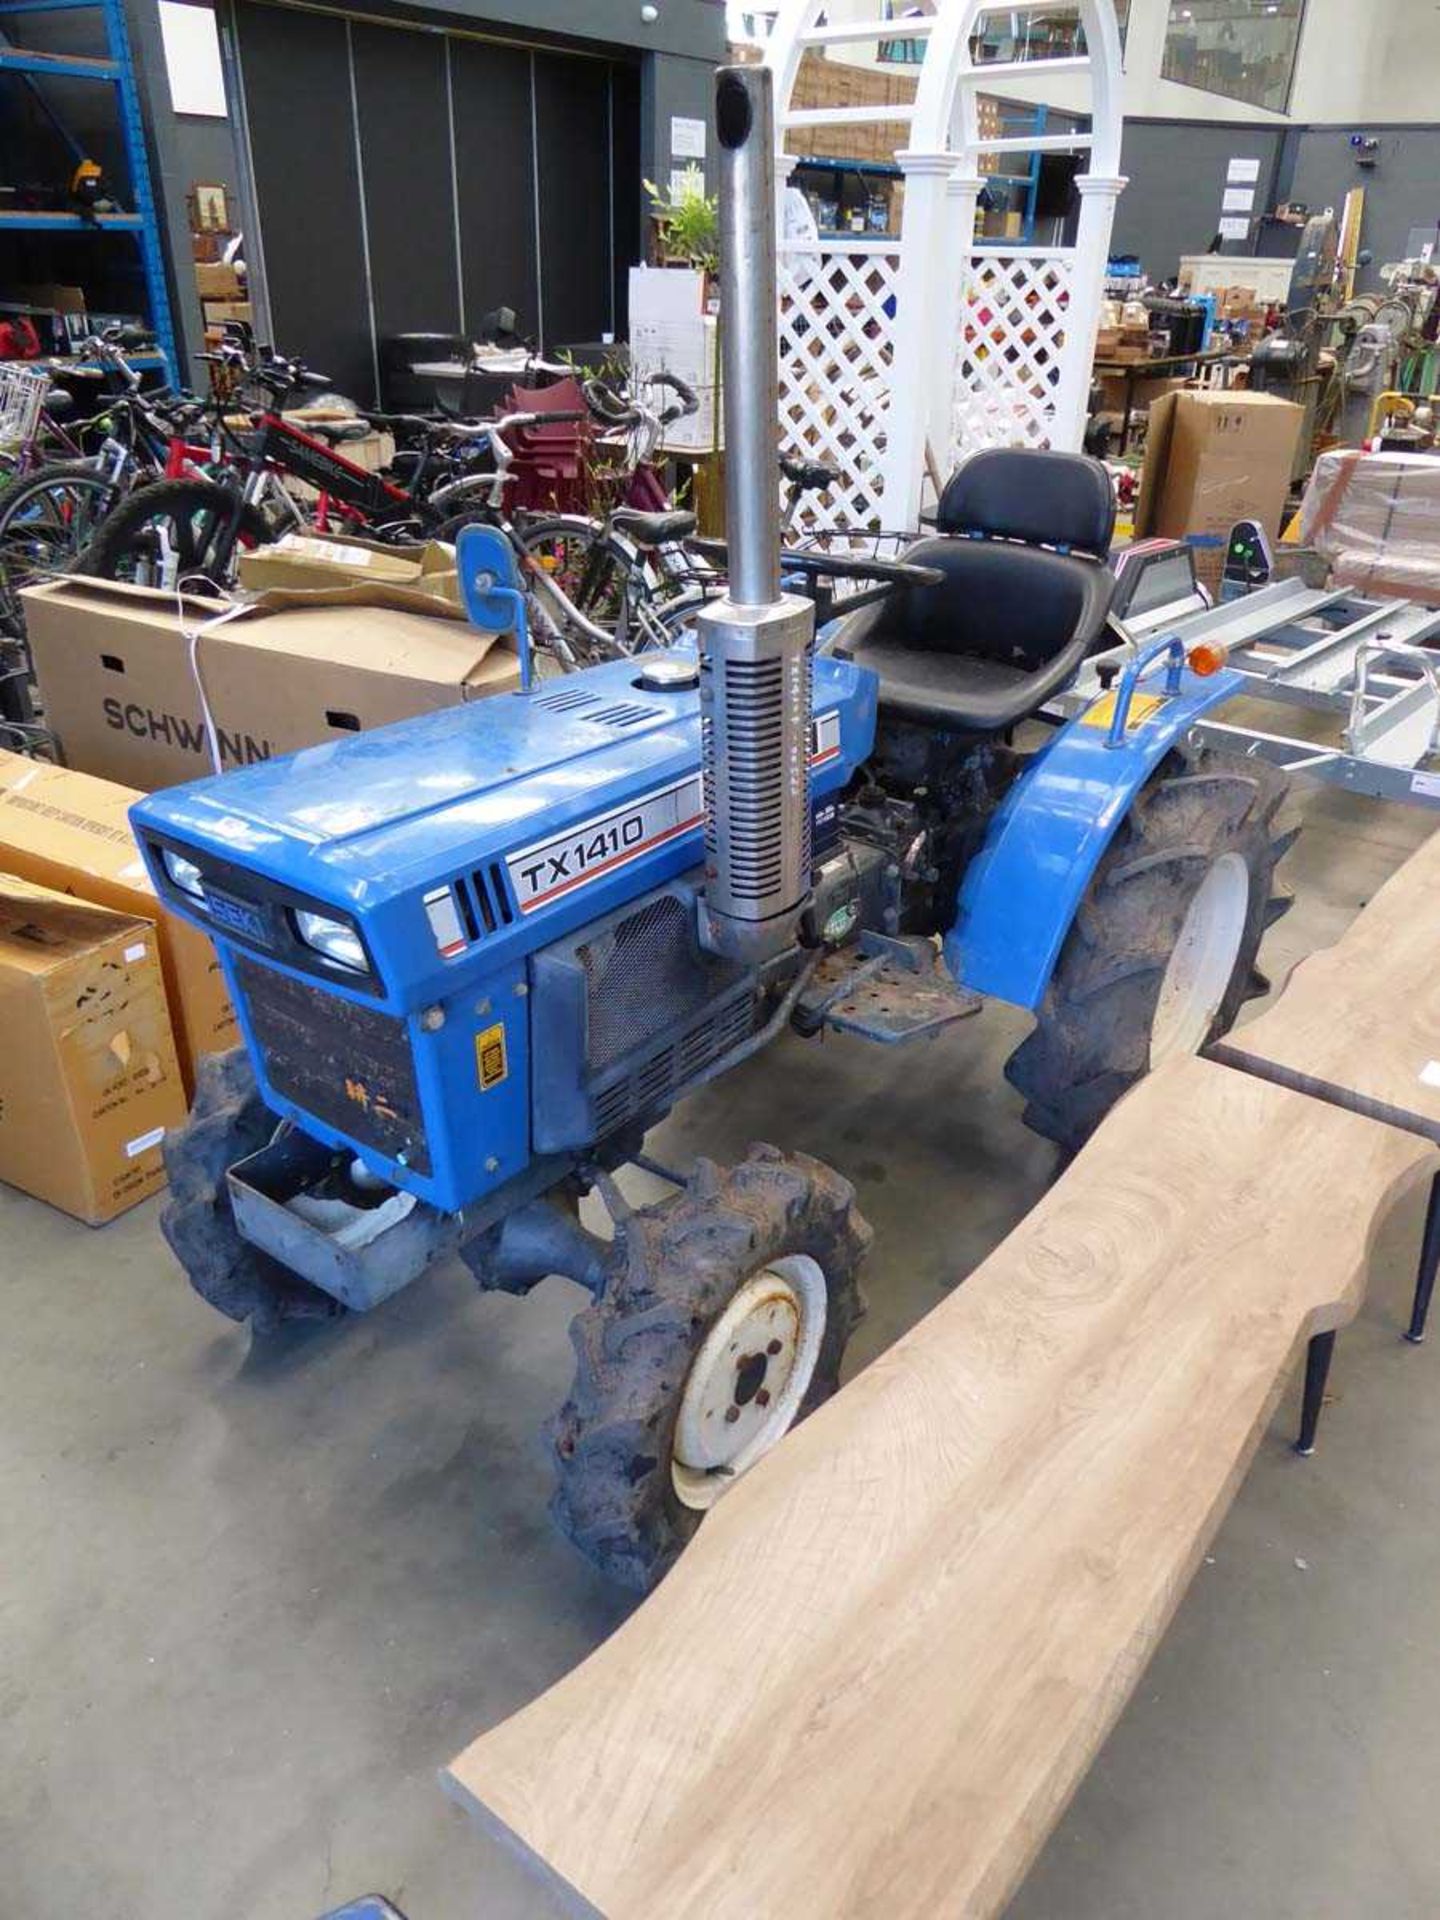 ISEKI Tx 1410 Mini Tractor - Image 2 of 8